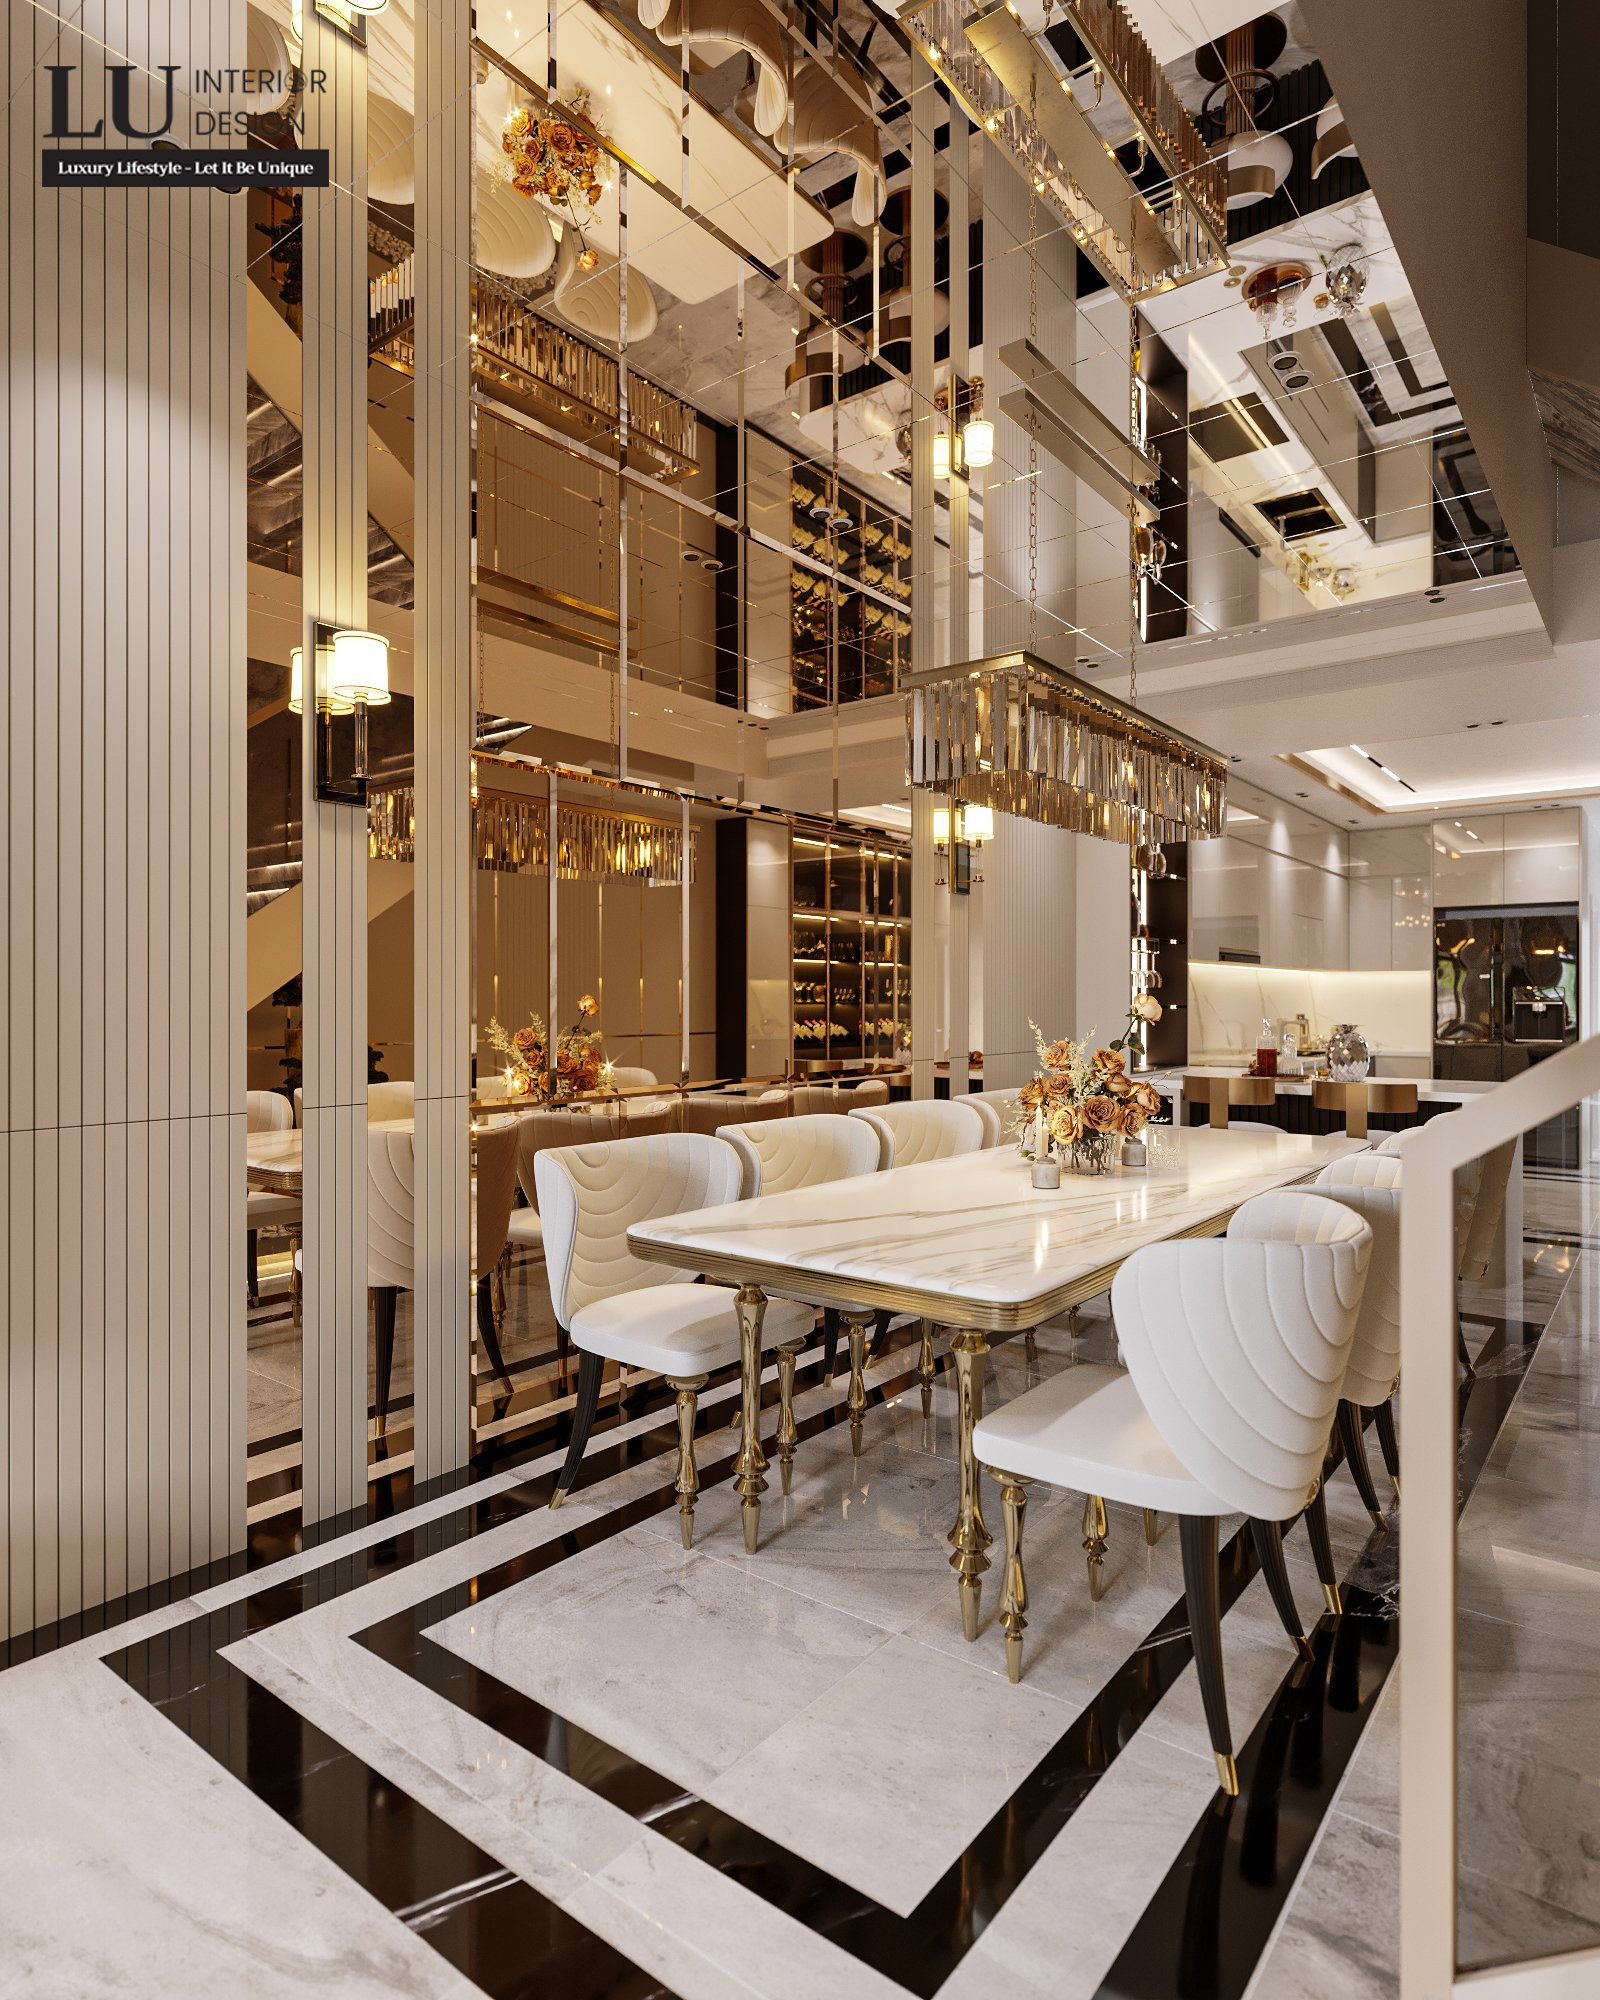 KTS sử dụng gương ốp vách trang trí 3 chiều để tạo hiệu ứng nhân đôi chiều rộng cho không gian phòng ăn | Nhà phố Tân phú - LU Design.